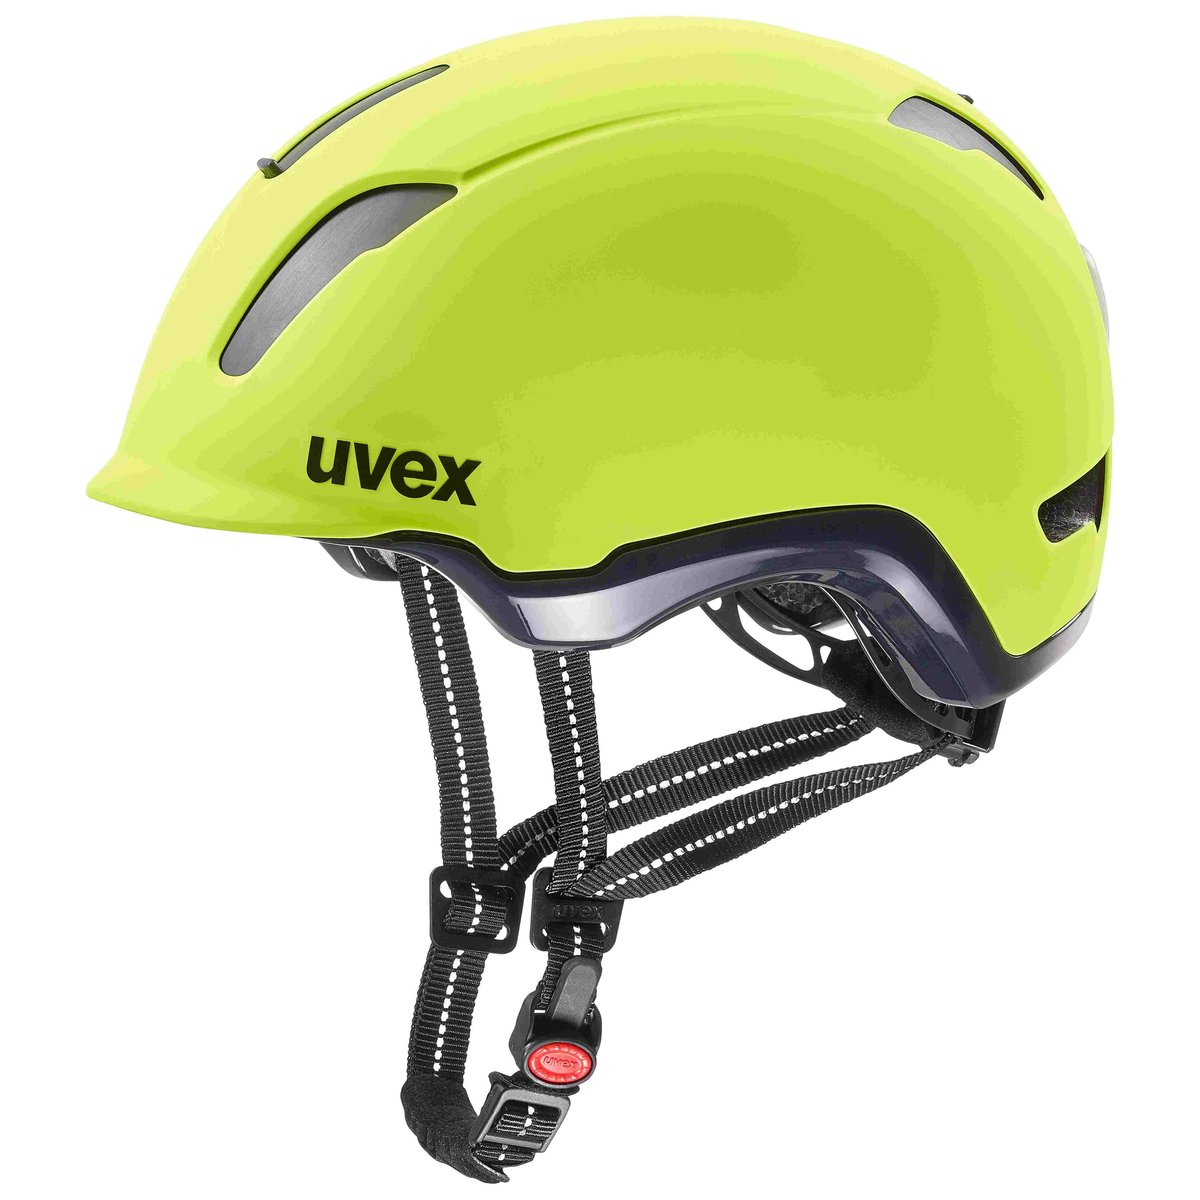 UVEX City 9 Kask rowerowy, neon yellow 53-57cm 2020 Kaski miejskie i trekkingowe S4109710215